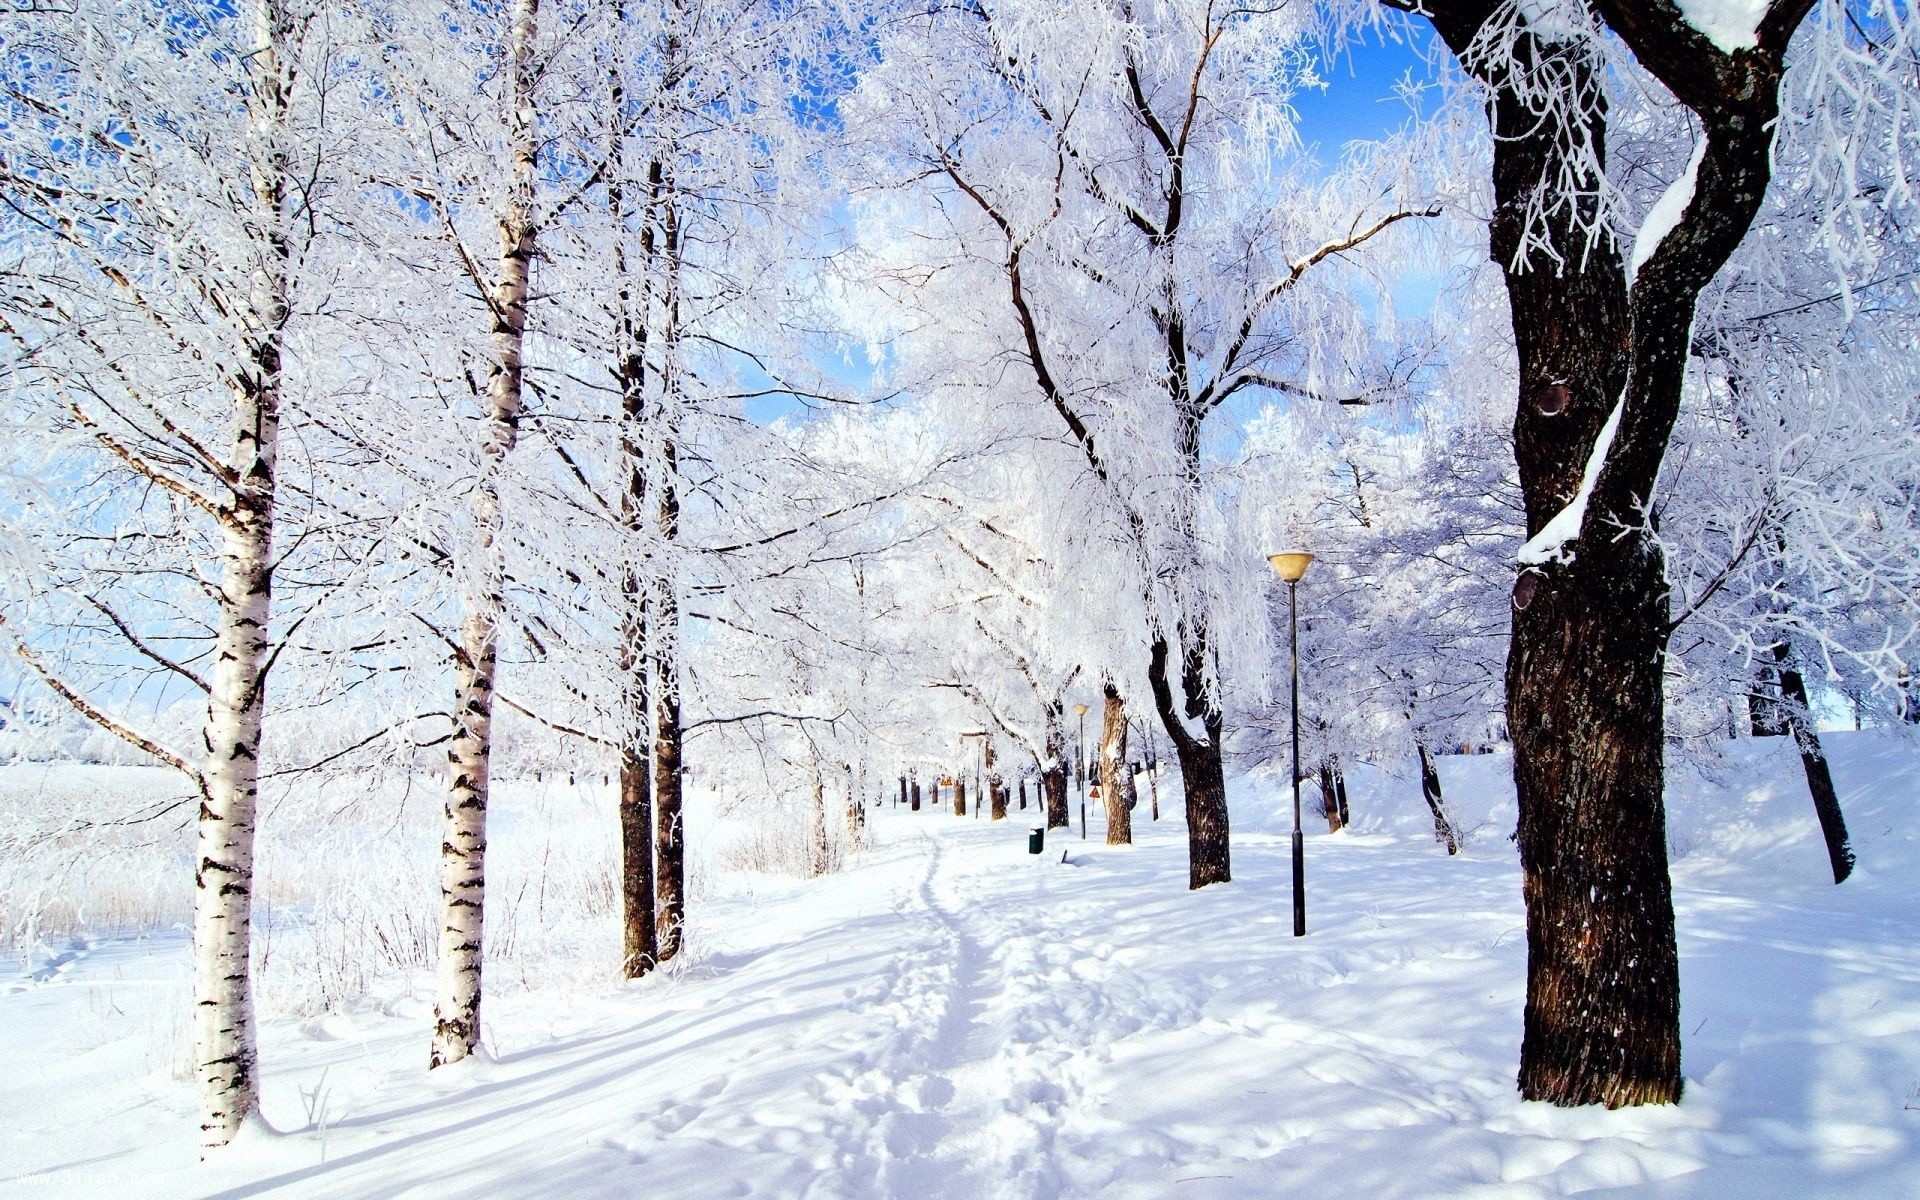 大雪纷飞美景实景图片